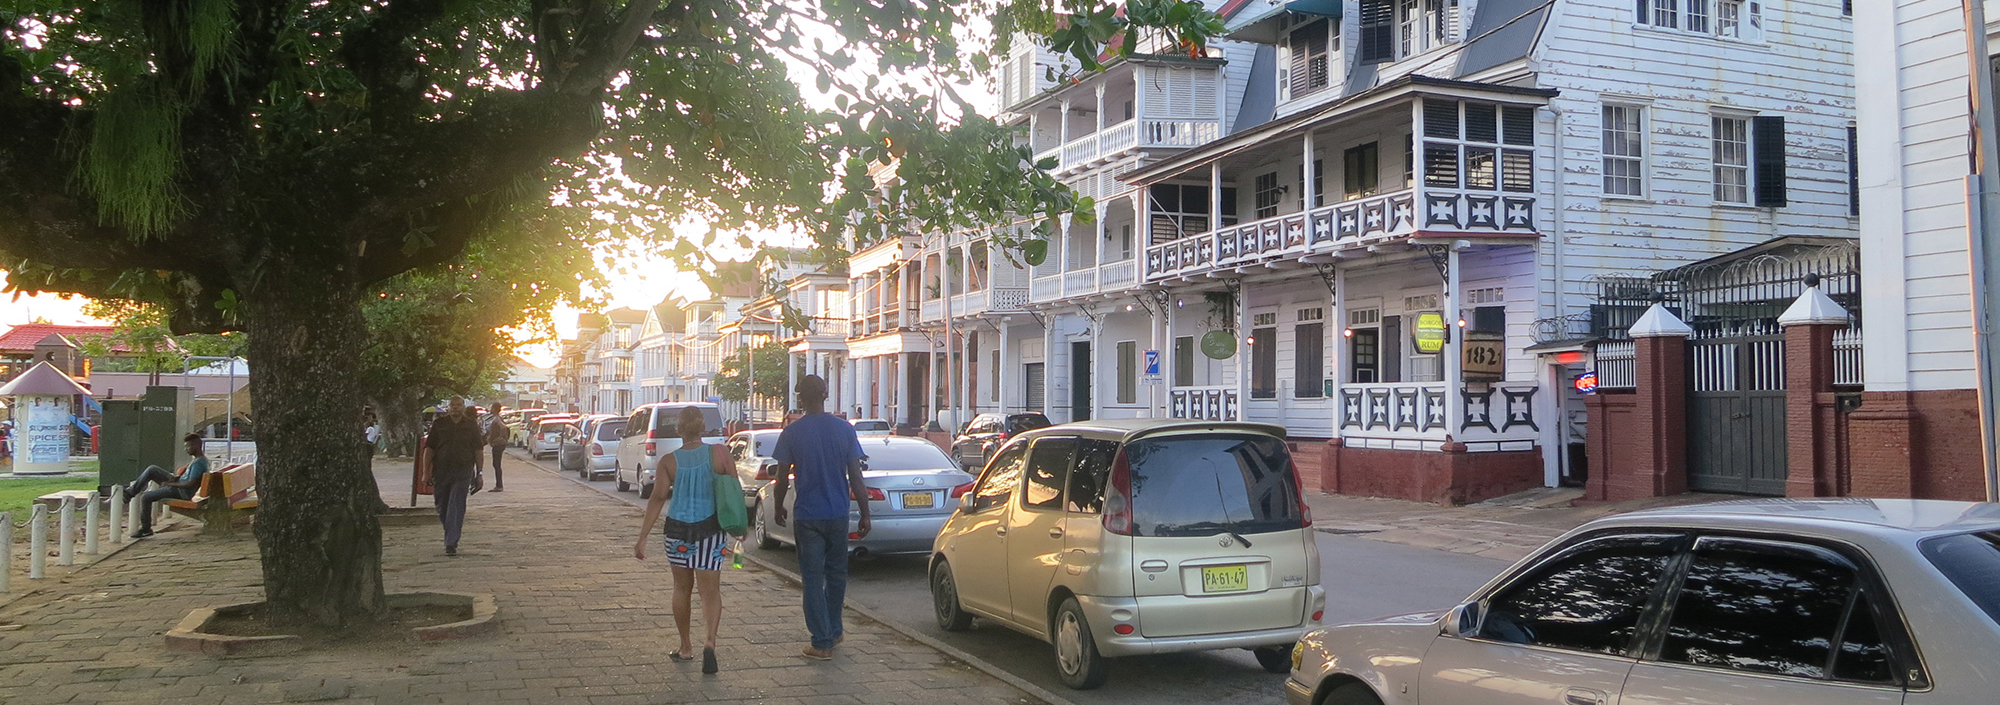 Stadtbummel in Paramaribo an der Uferpromenade mit restaurierten weißen Holzhäusern